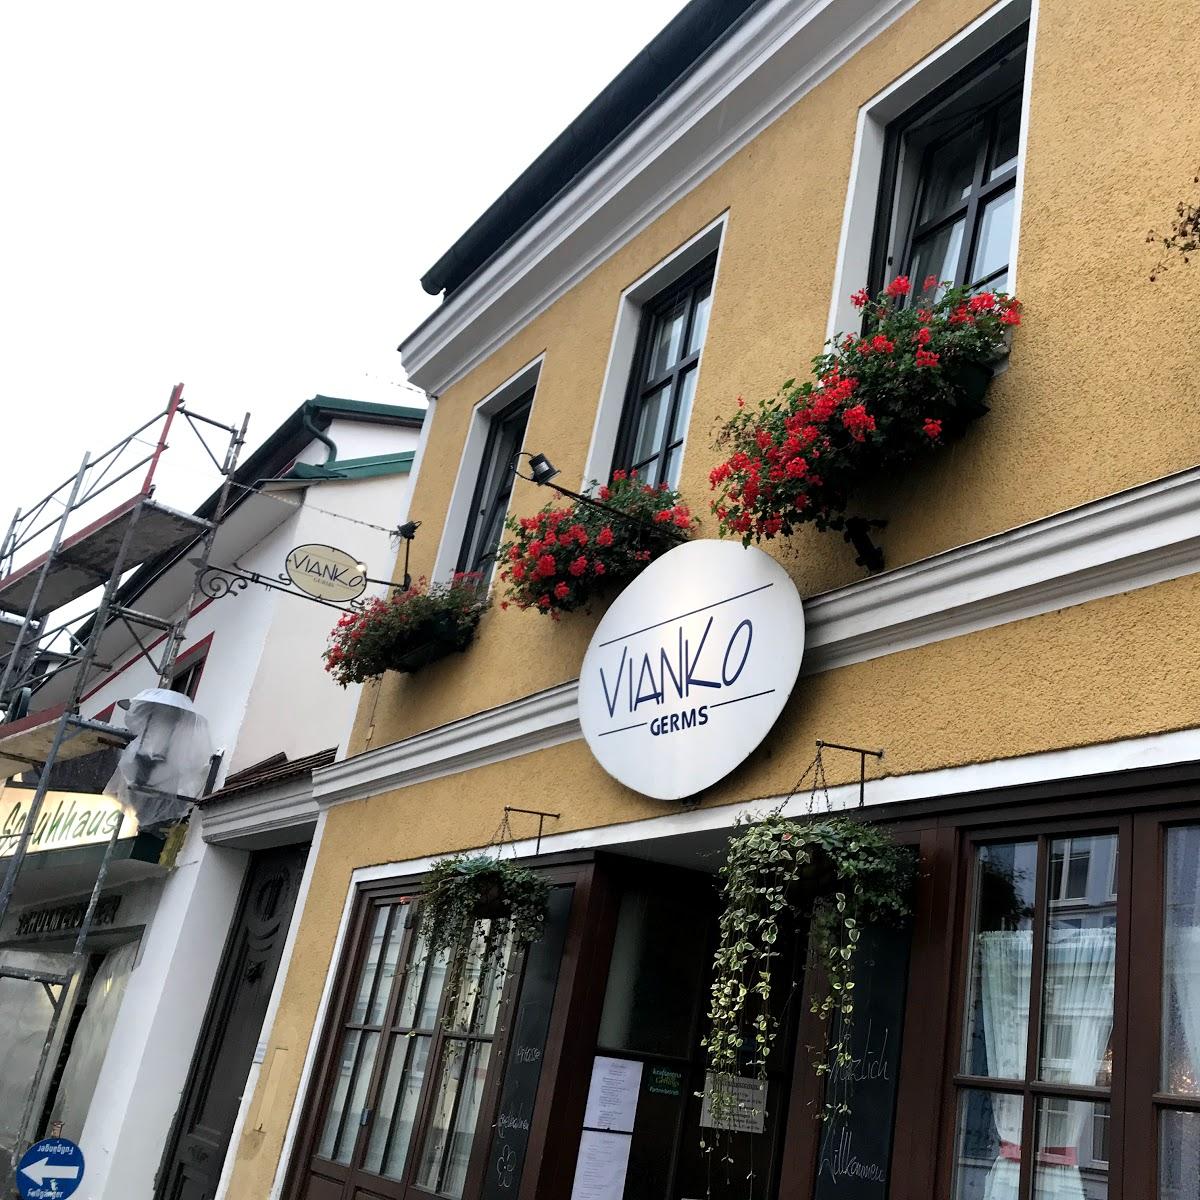 Restaurant "Vianko" in Groß Gerungs